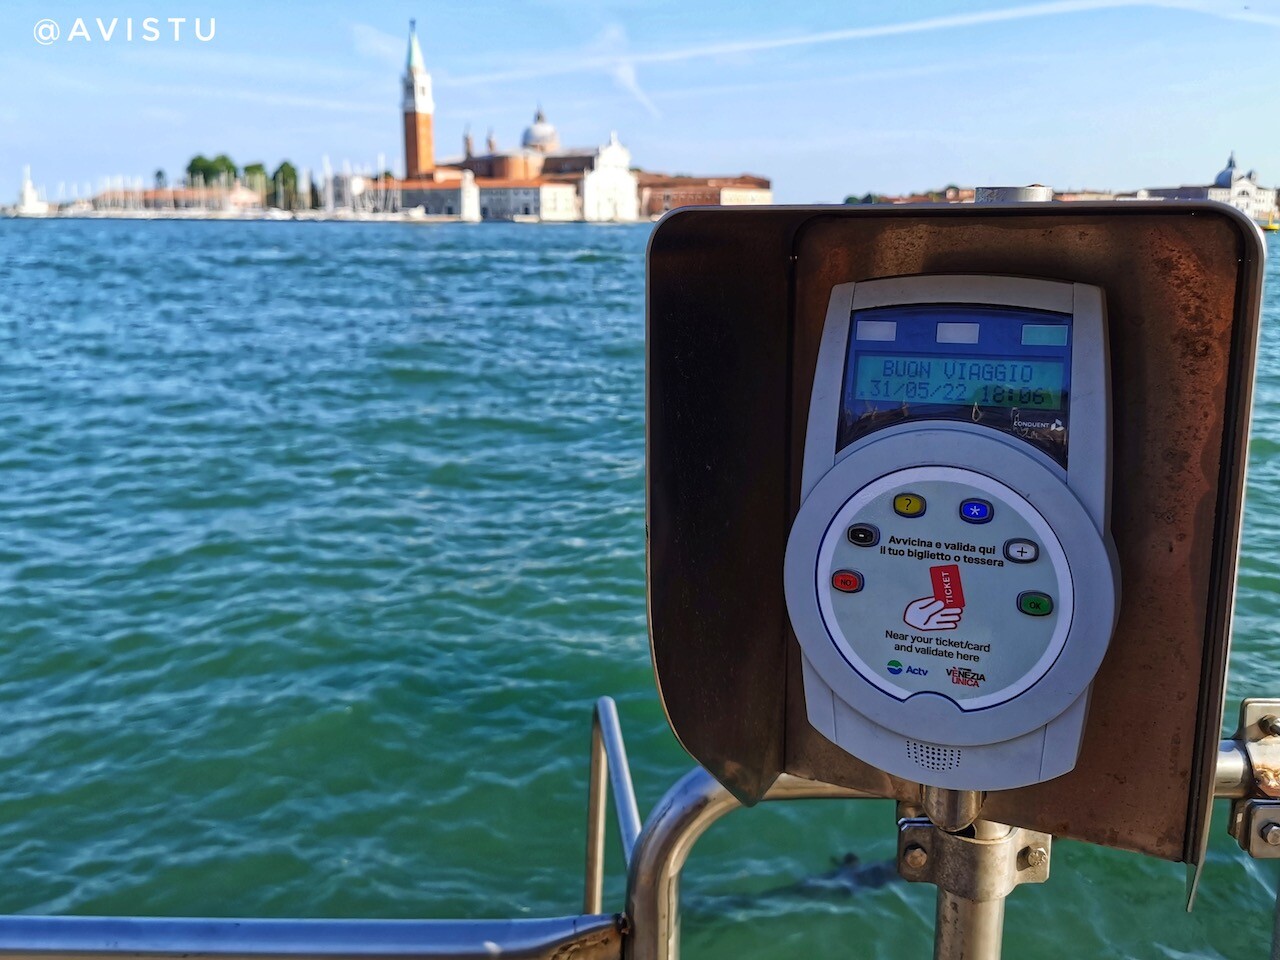 Máquina validadora del billete en Venecia